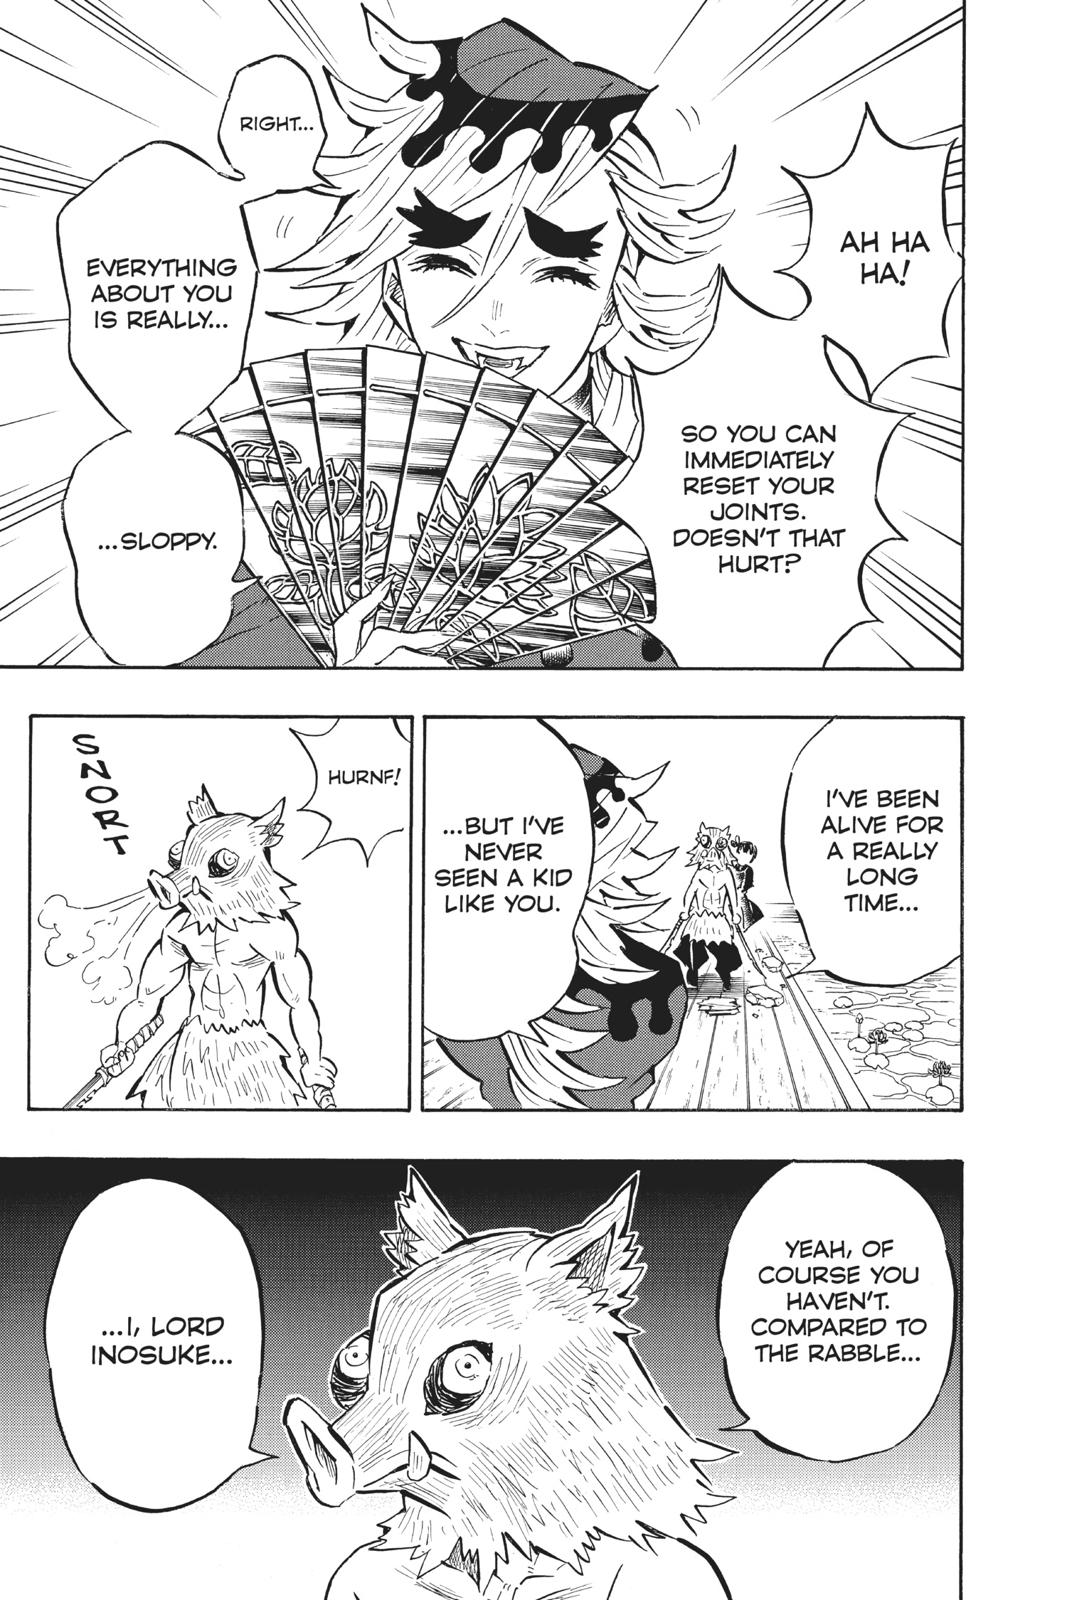 Demon Slayer Manga Manga Chapter - 159 - image 17